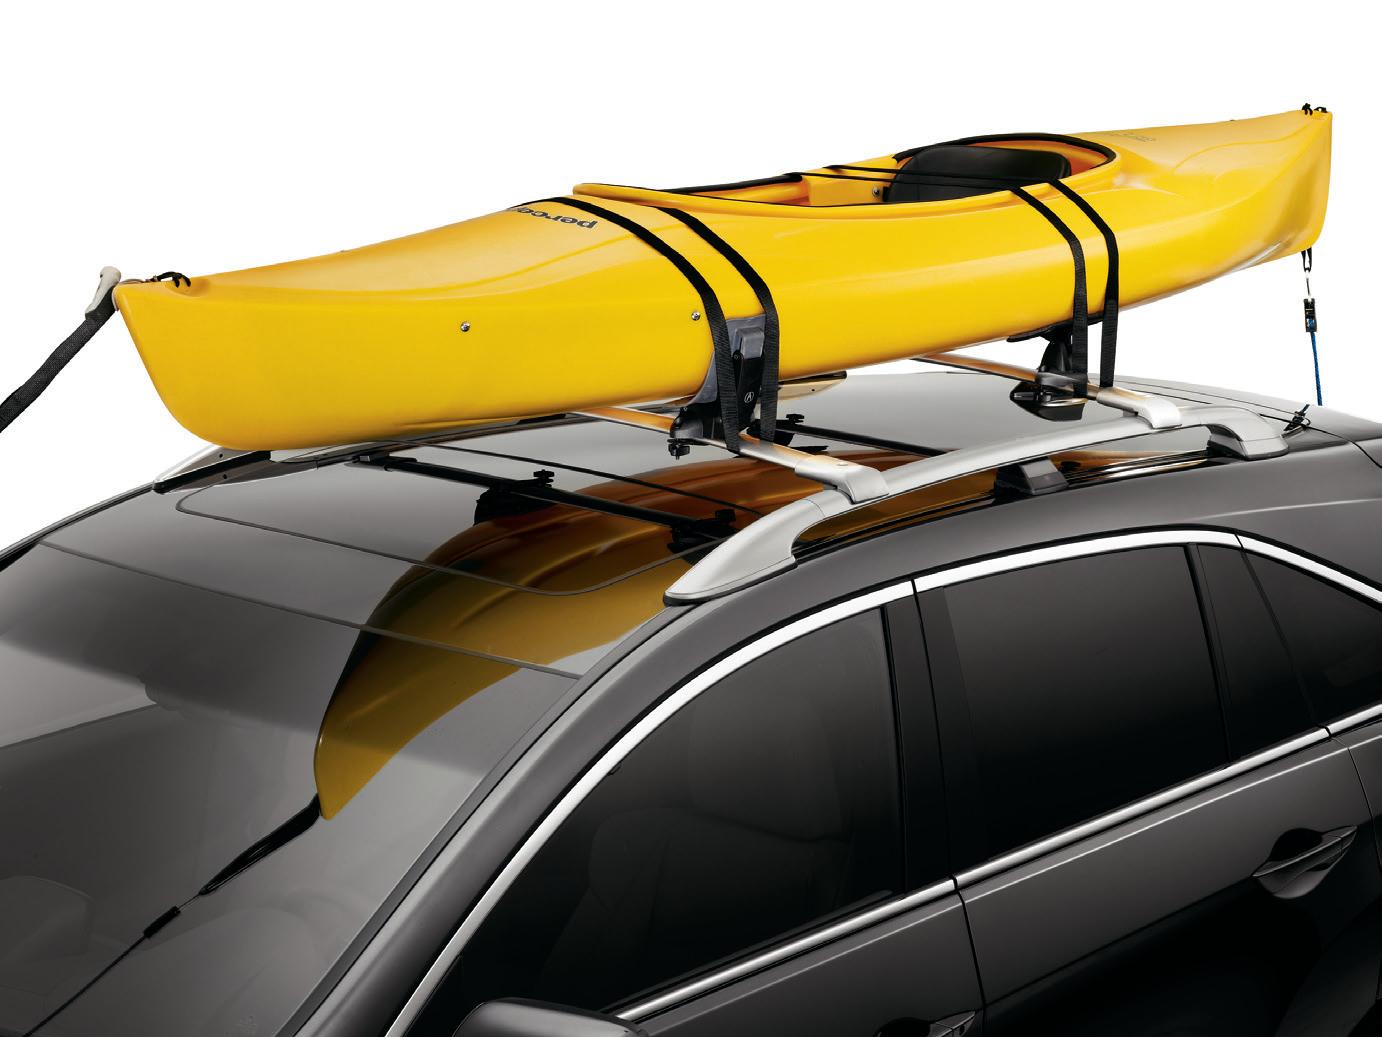 2017 Acura RDX Kayak Attachment 08L09-TA1-200